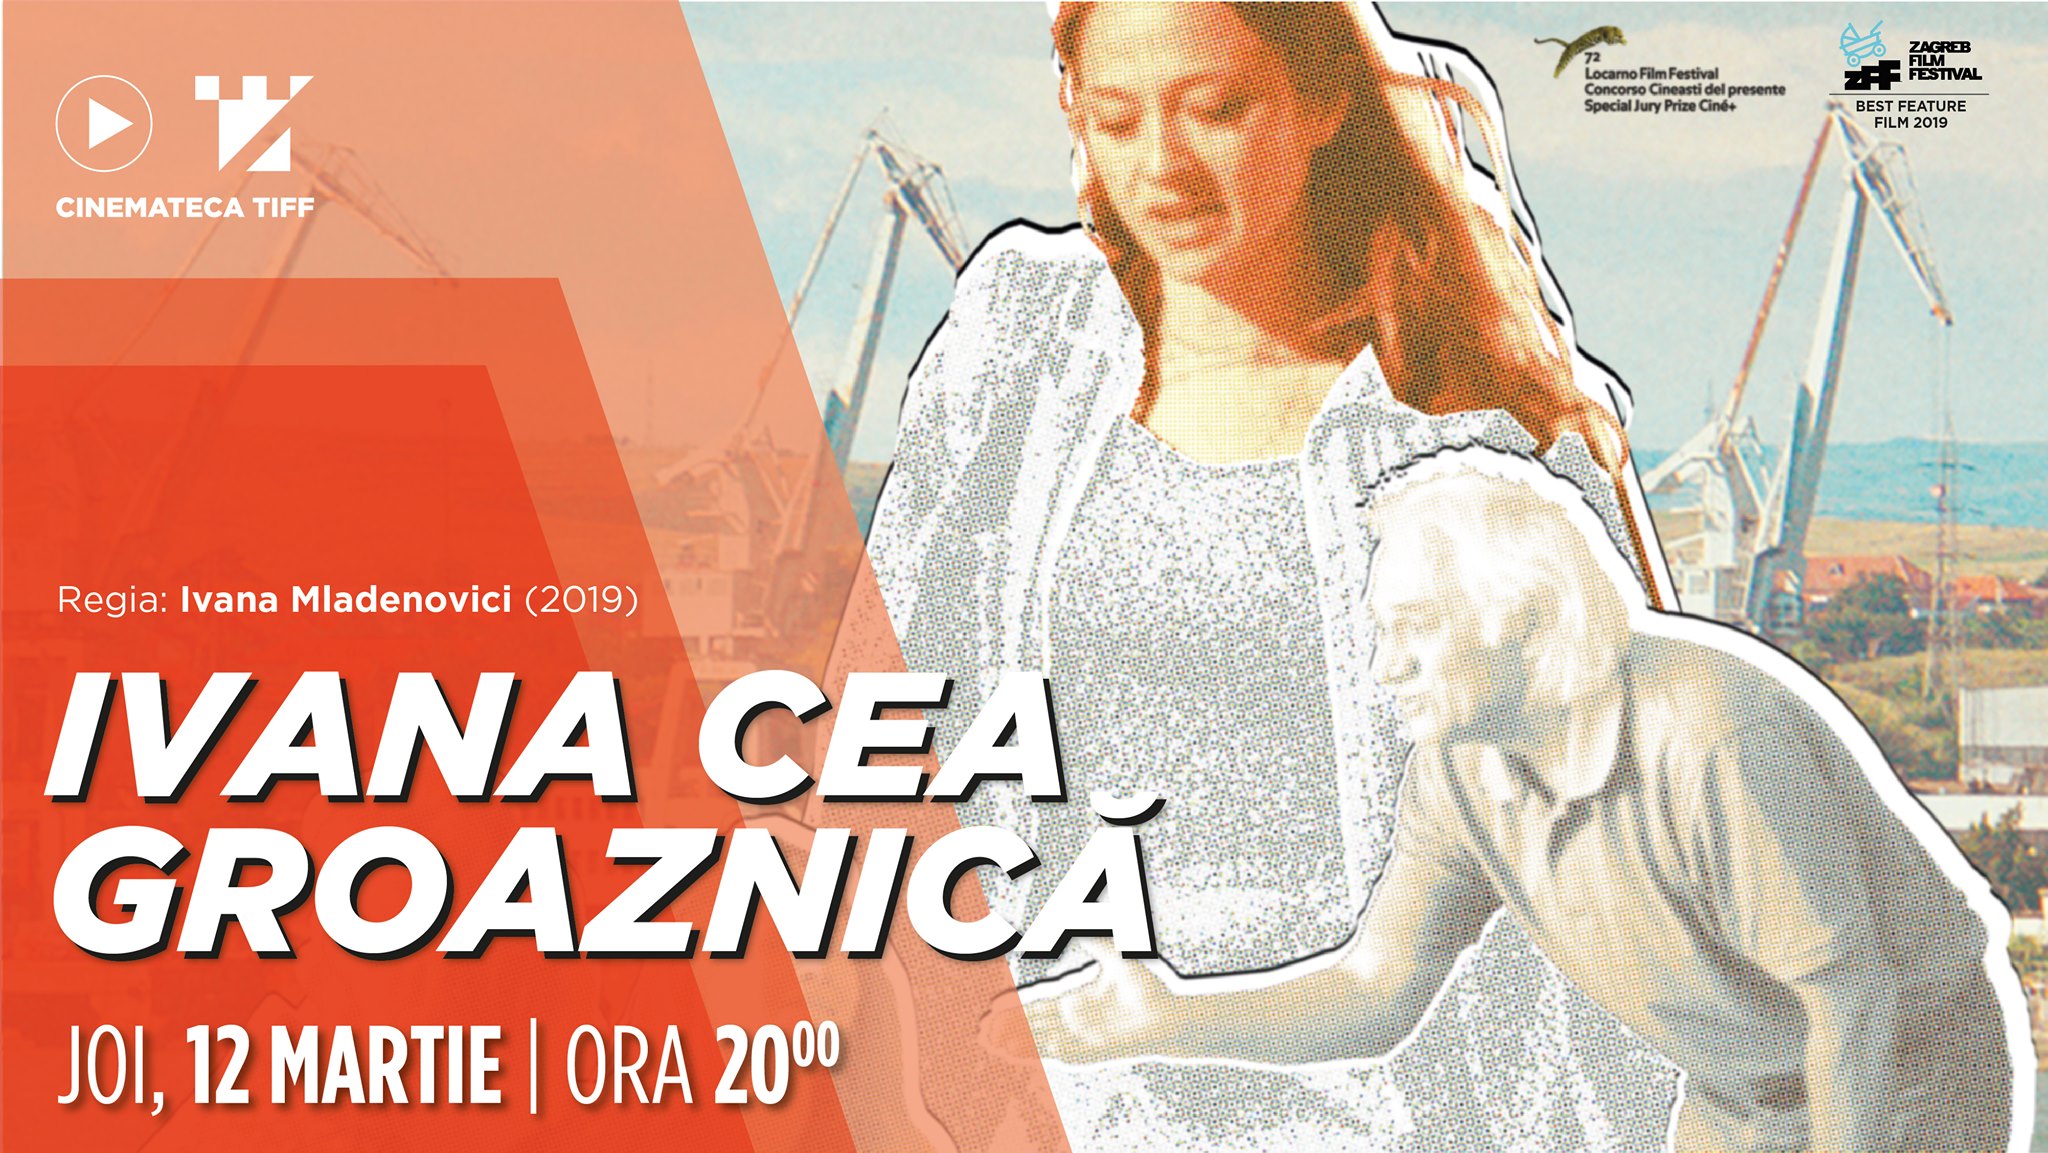 Ivana Cea Groaznică | Proiecție Specială – Cinemateca TIFF @ Cinema Victoria